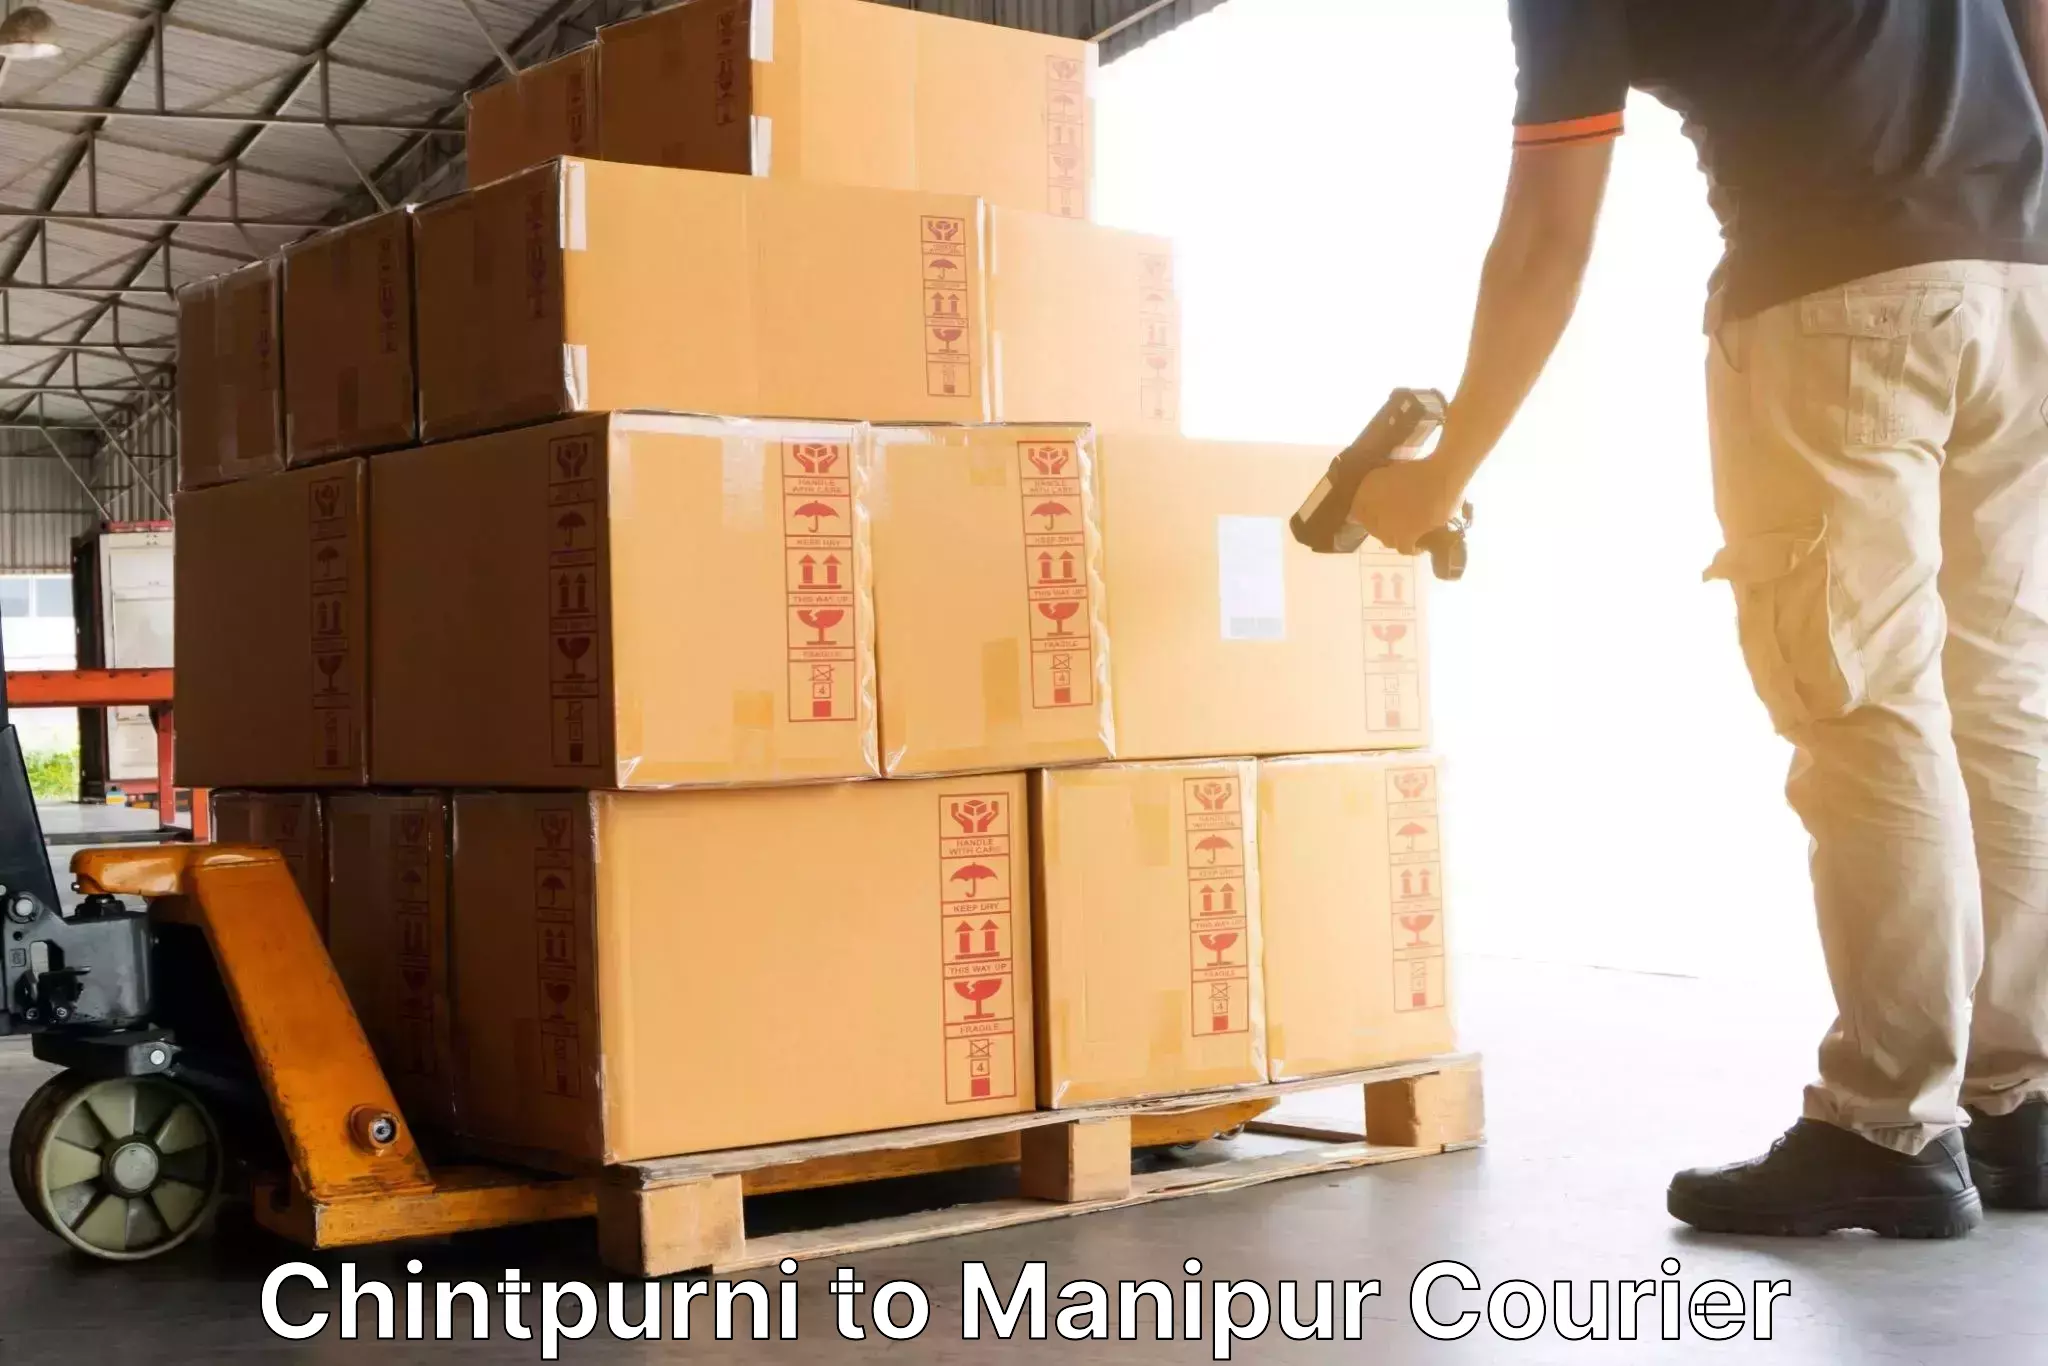 Express package handling Chintpurni to Senapati